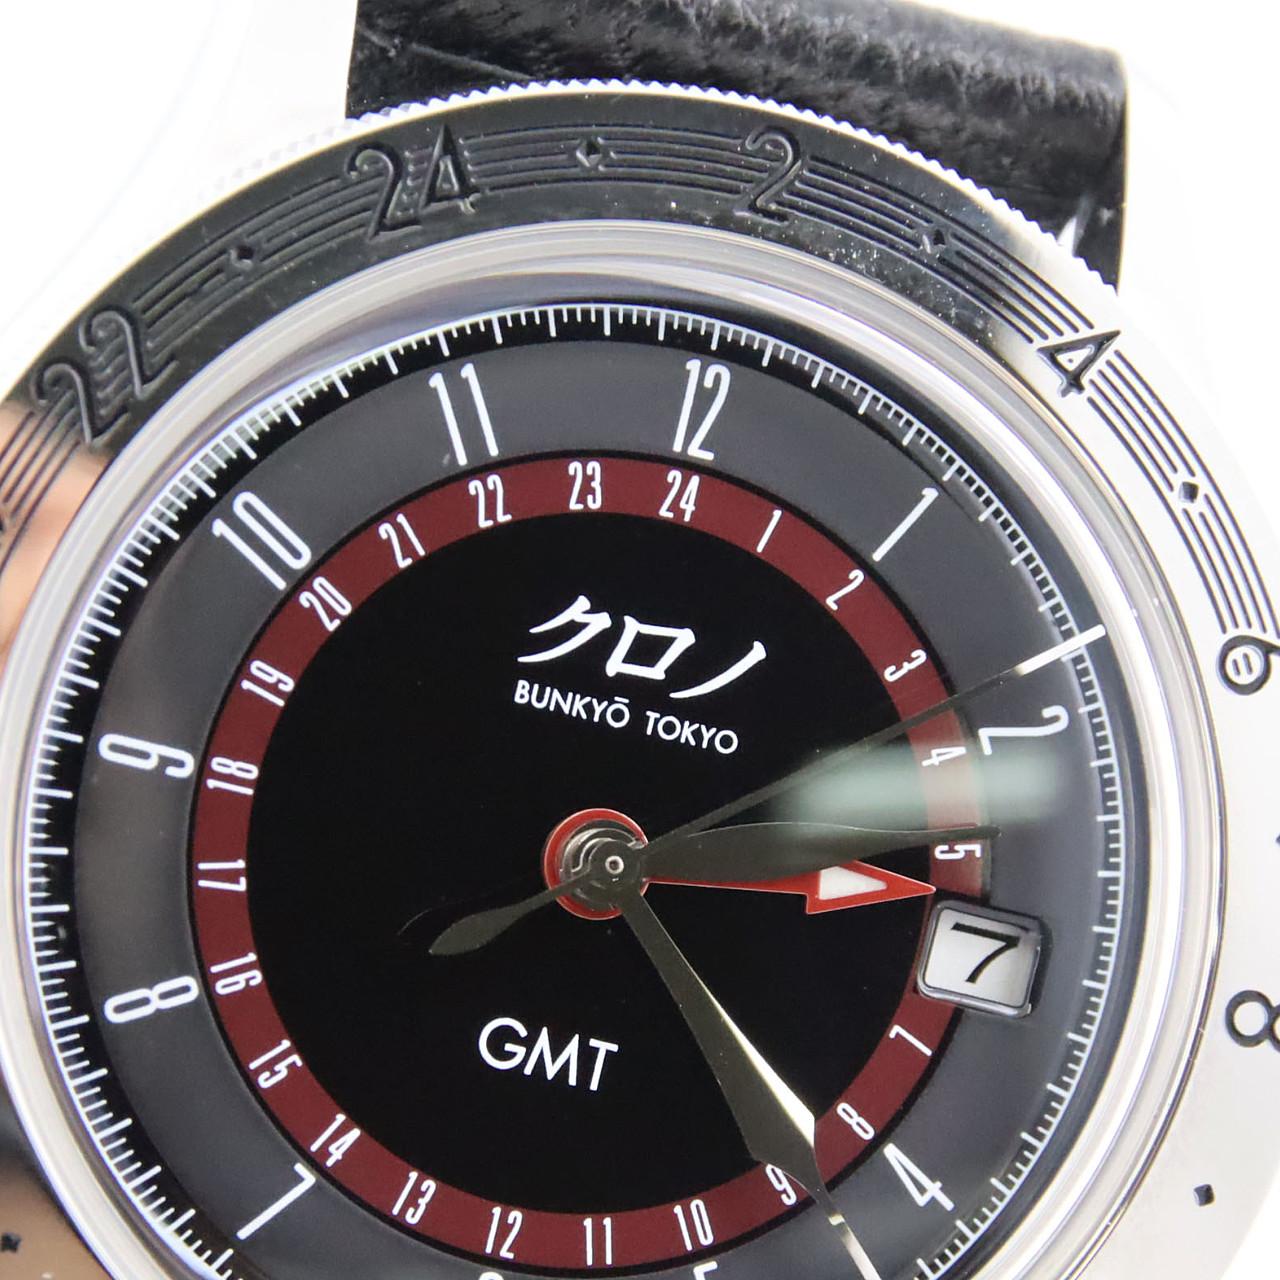 保存版】 腕時計 自動巻 GMT機能付き クロノブンキョウトウキョウ ...